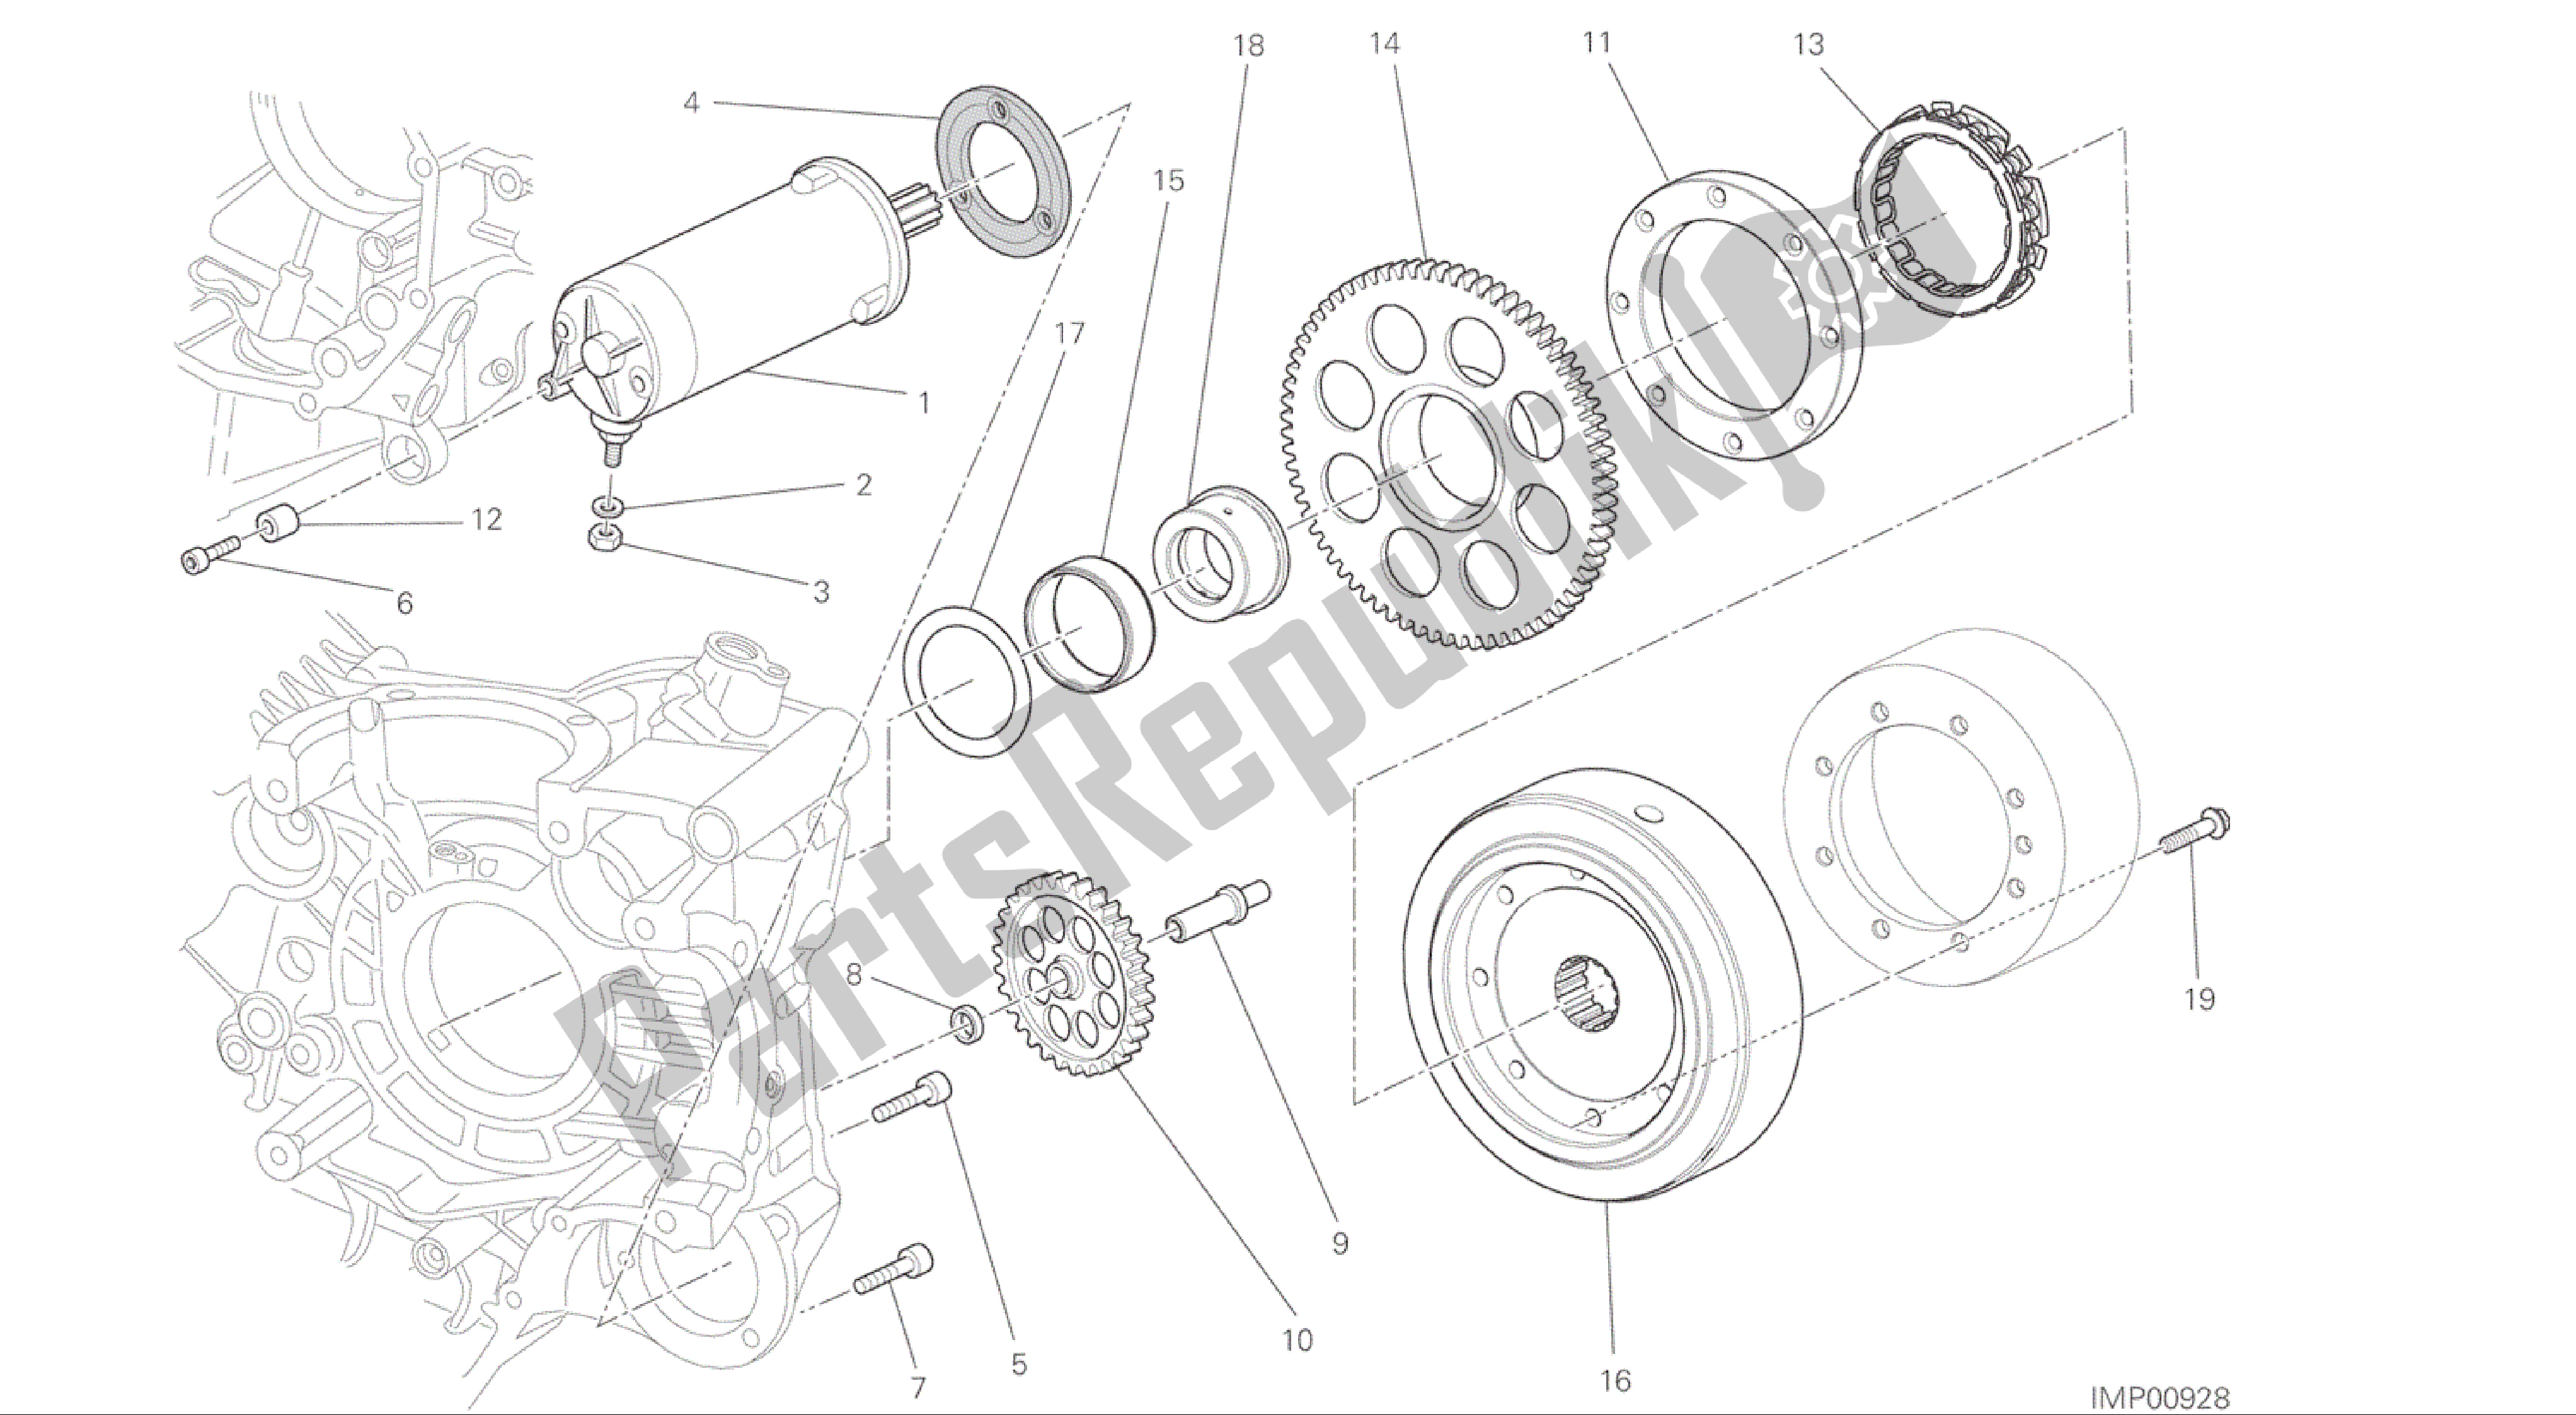 Todas las partes para Dibujo 012 - Motor De Grupo De Arranque Eléctrico Y Encendido [mod: M 1200] de Ducati Monster 1200 2015